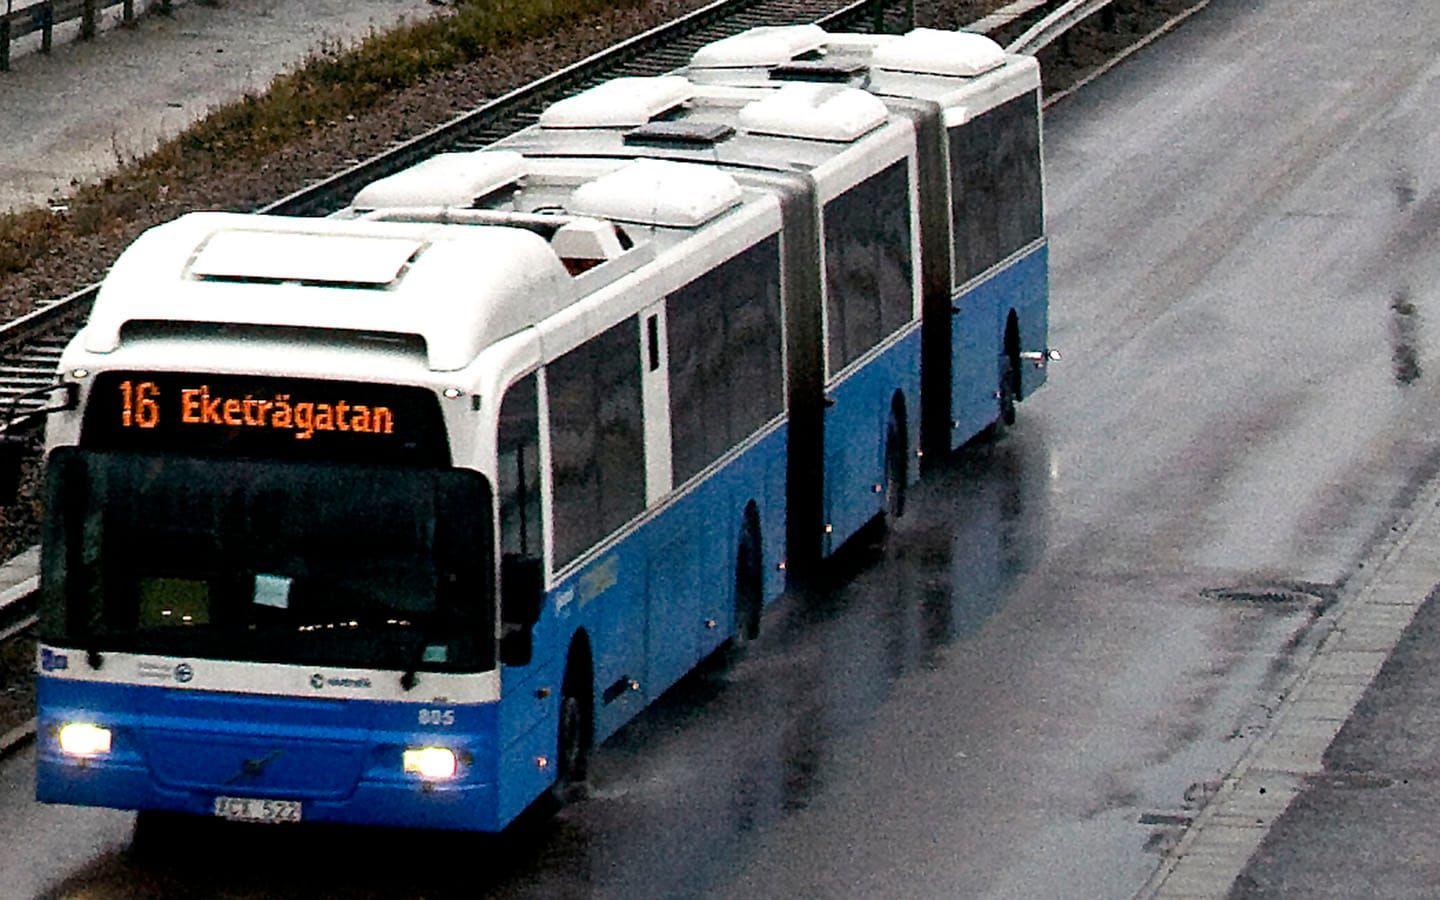 Under kväll och natt drabbas flera bussturer av kraftiga förseningar på grund av väglaget. Bild: GP